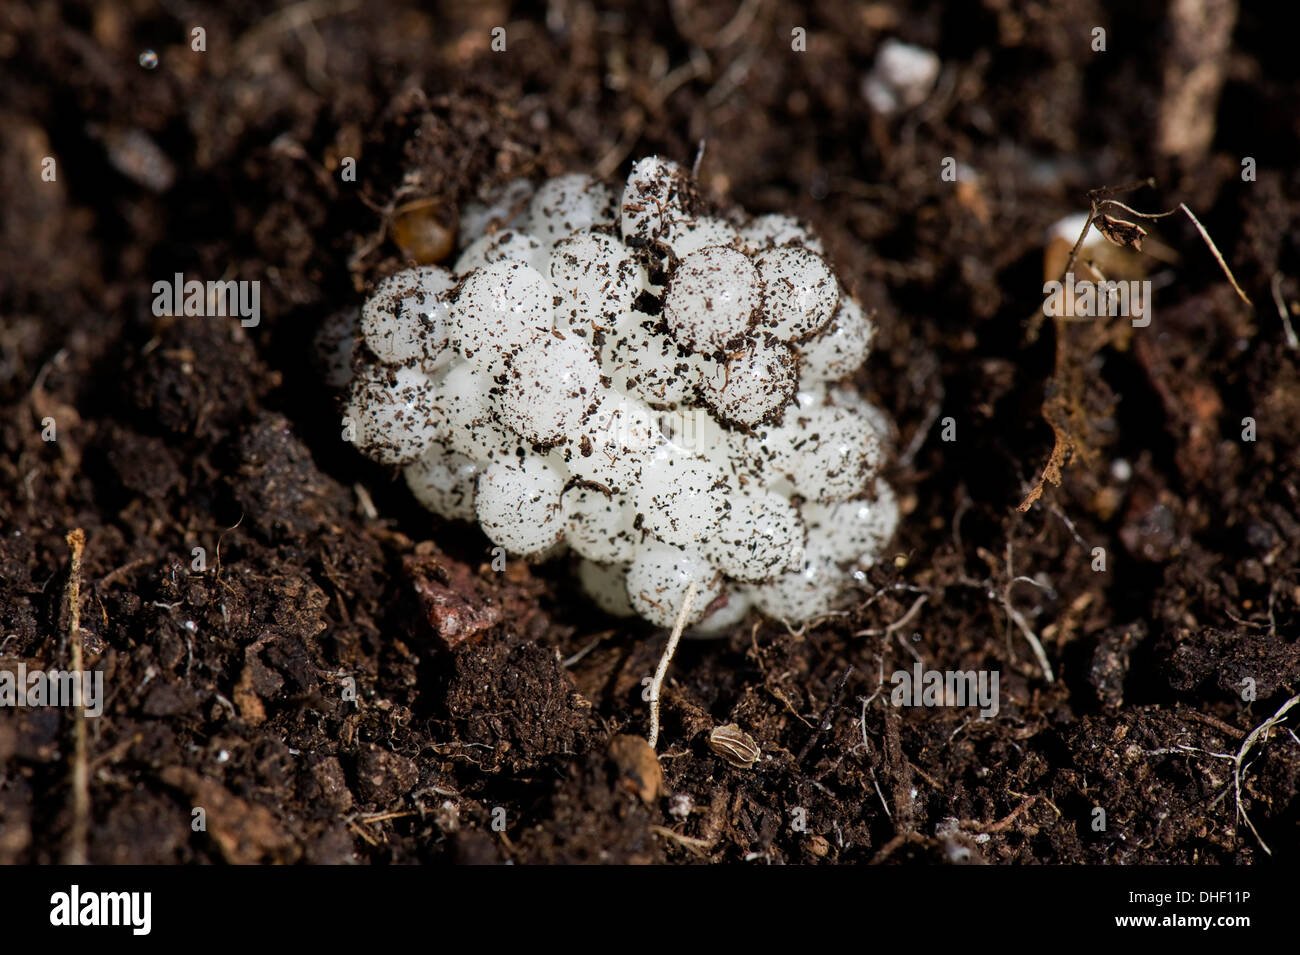 Eggs of a garden snail, Helix aspersa, in soil Stock Photo